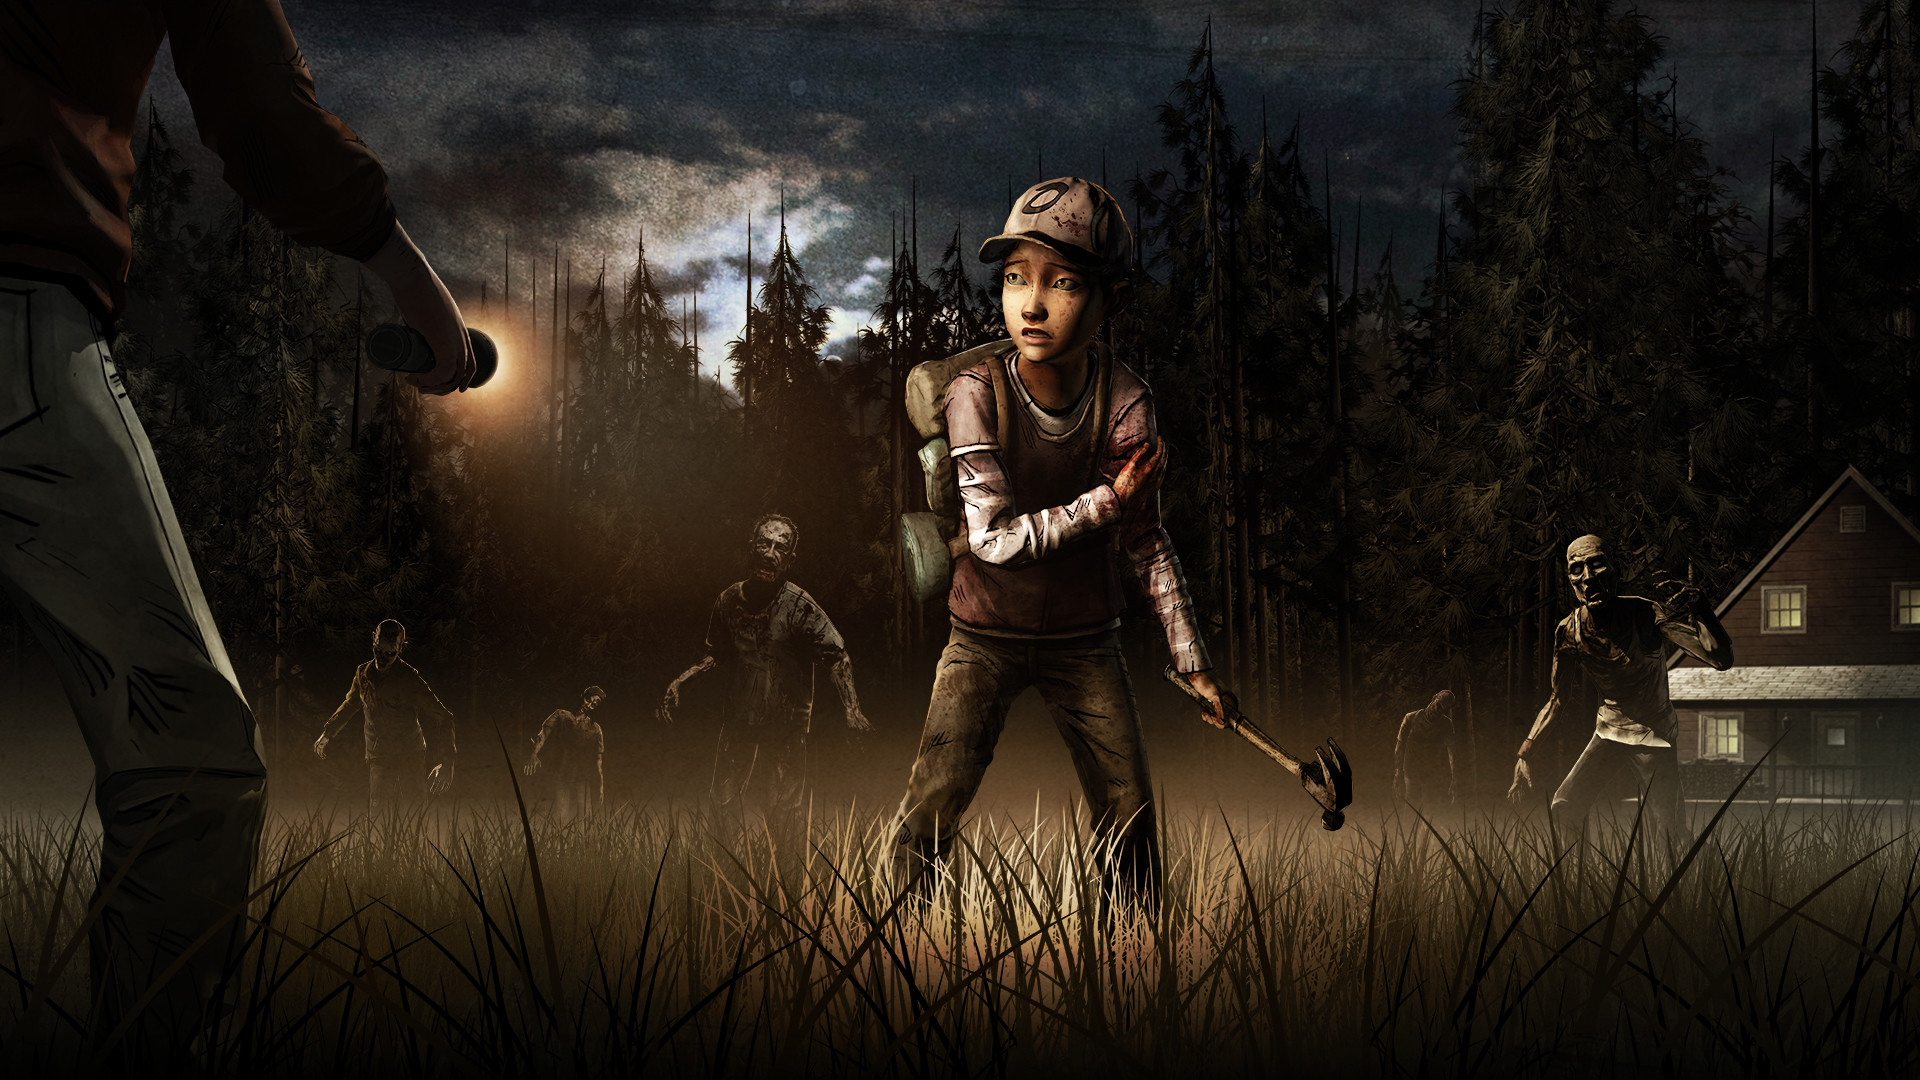 25 The Walking Dead Season 2 HD Wallpapers Backgrounds – Wallpaper Abyss